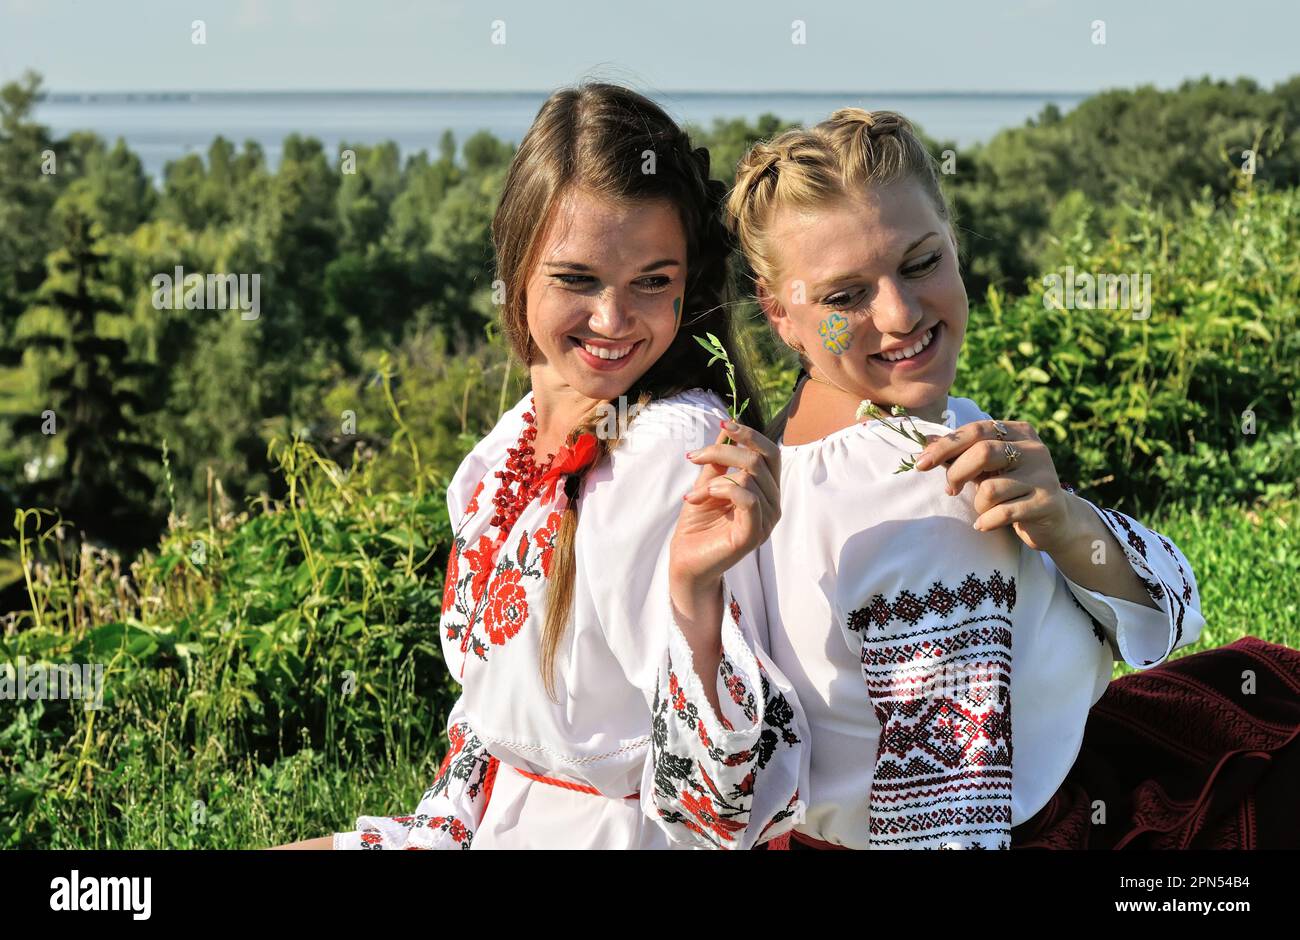 ritratto all'aperto di due giovani donne ucraine in abiti tradizionali ucraini Foto Stock